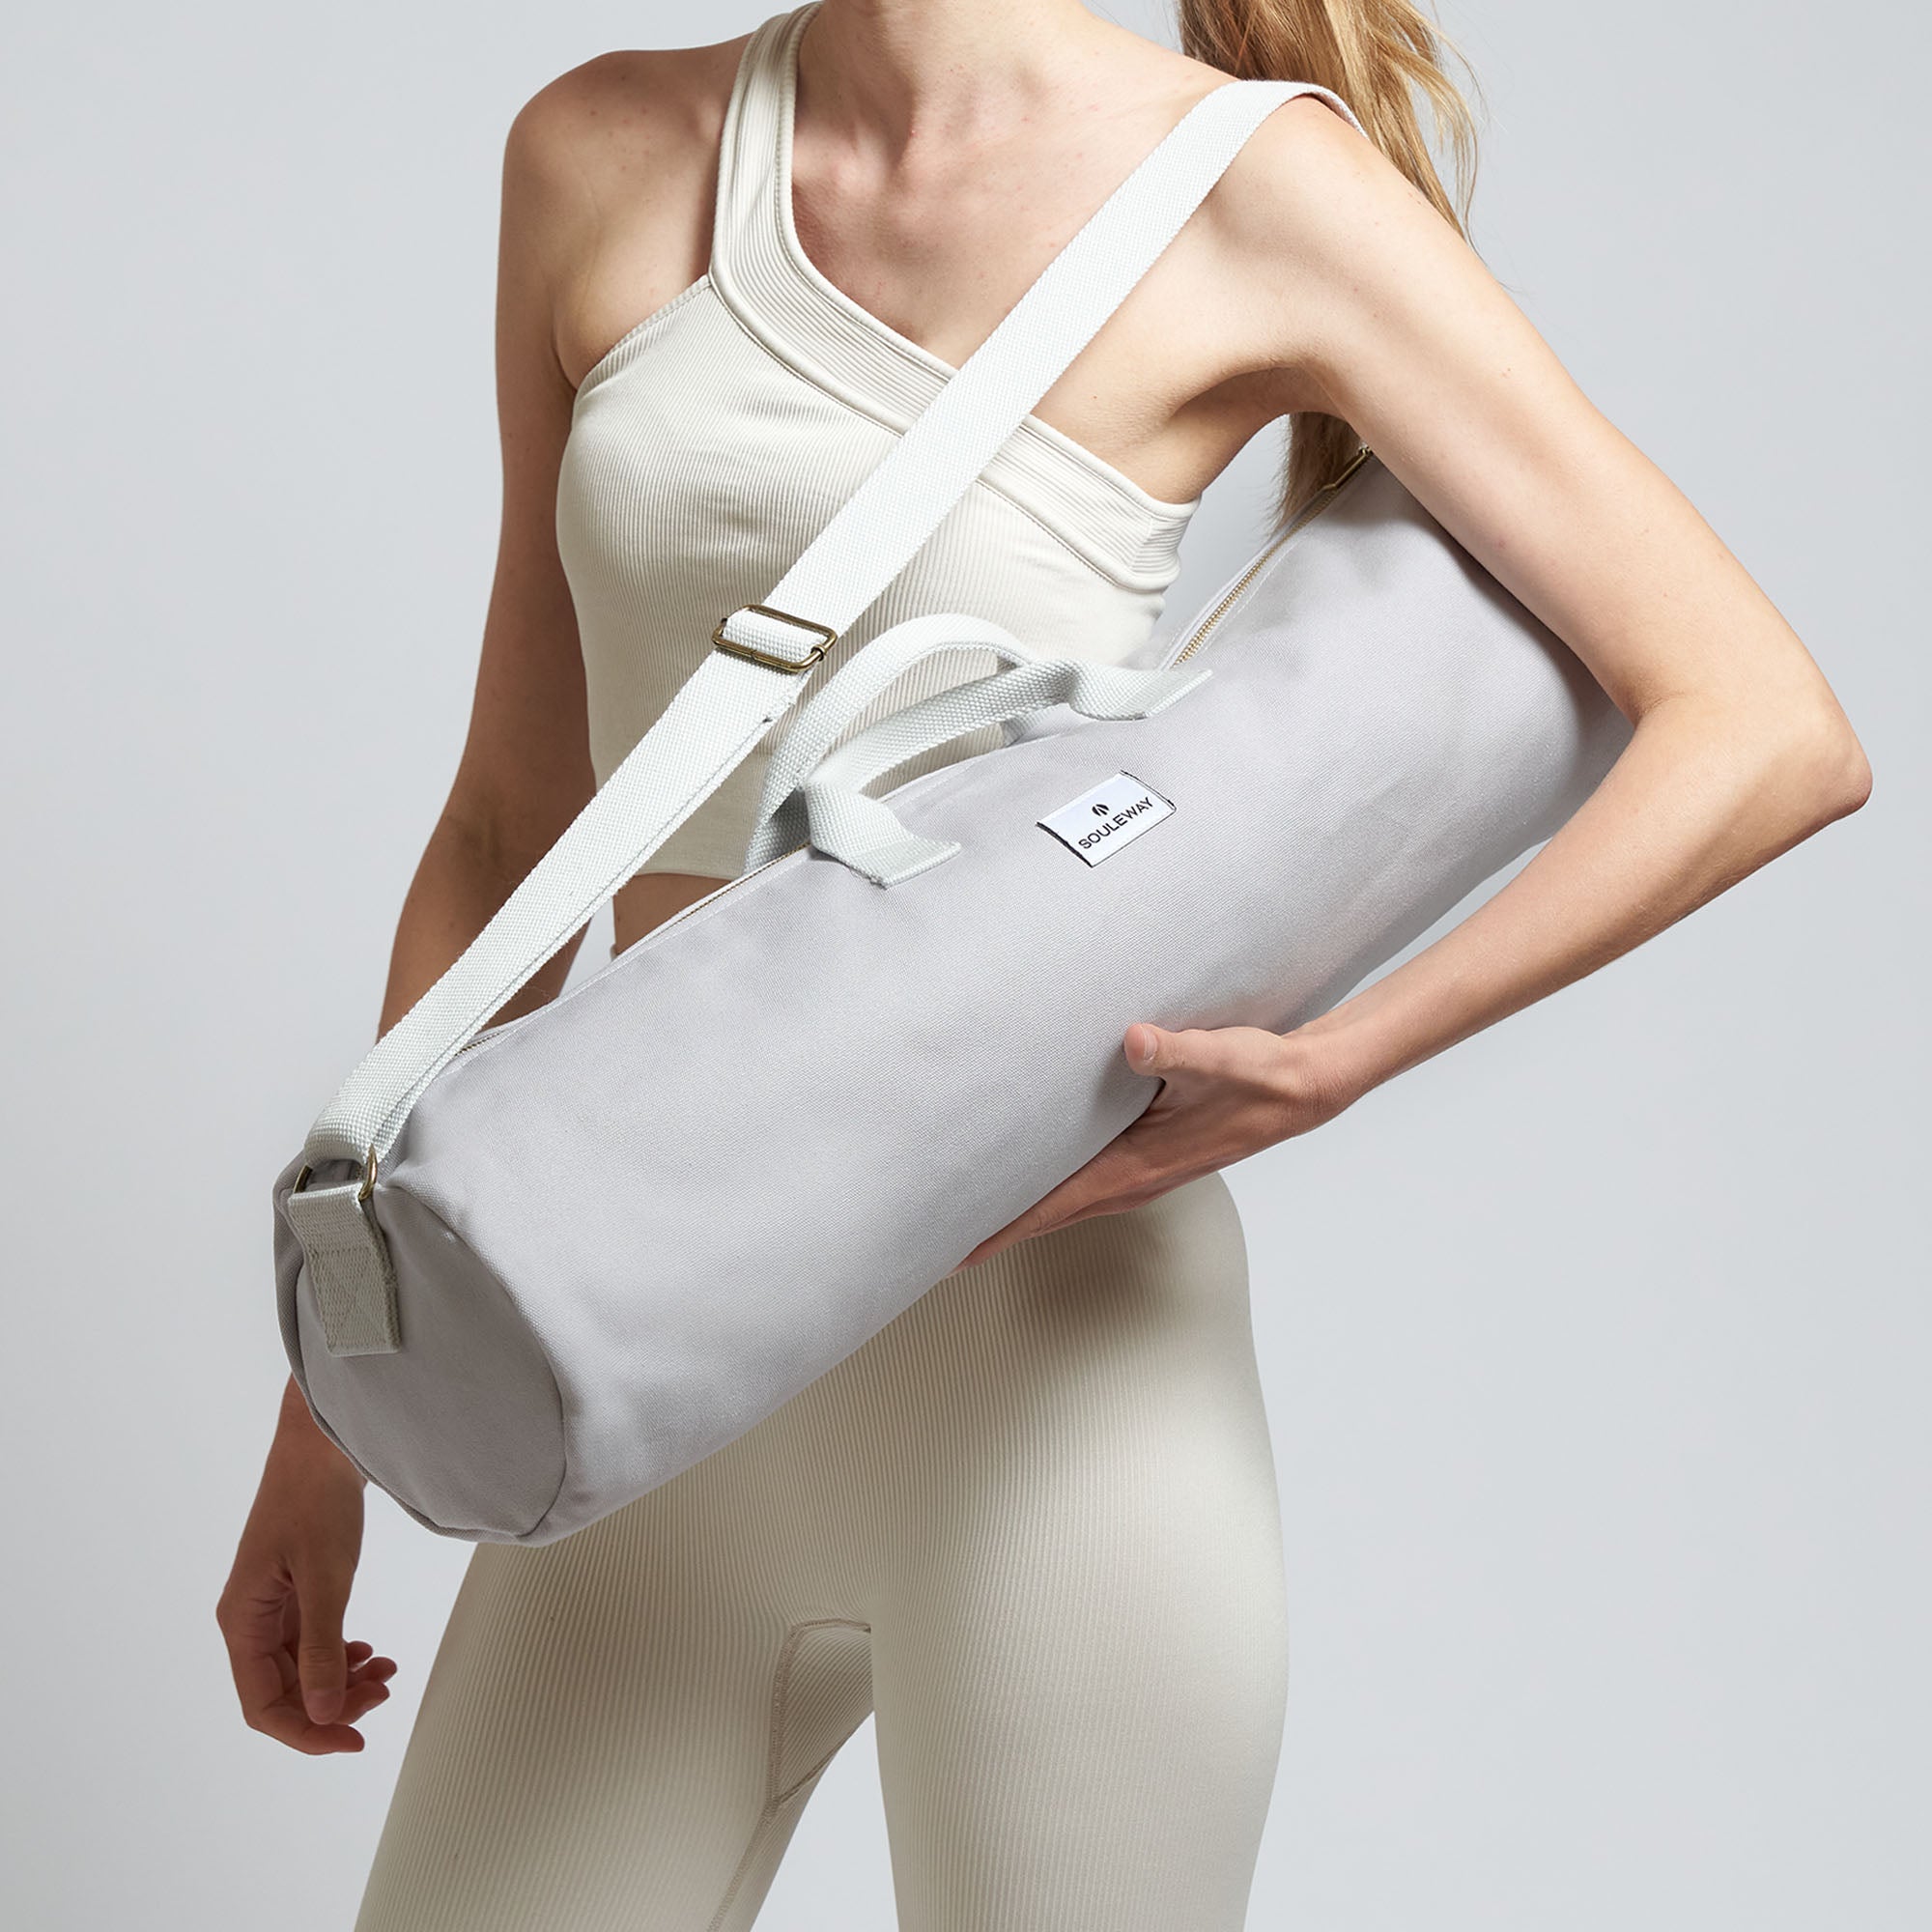 Lululemon Yoga mat carrier bag with shoulder strap black